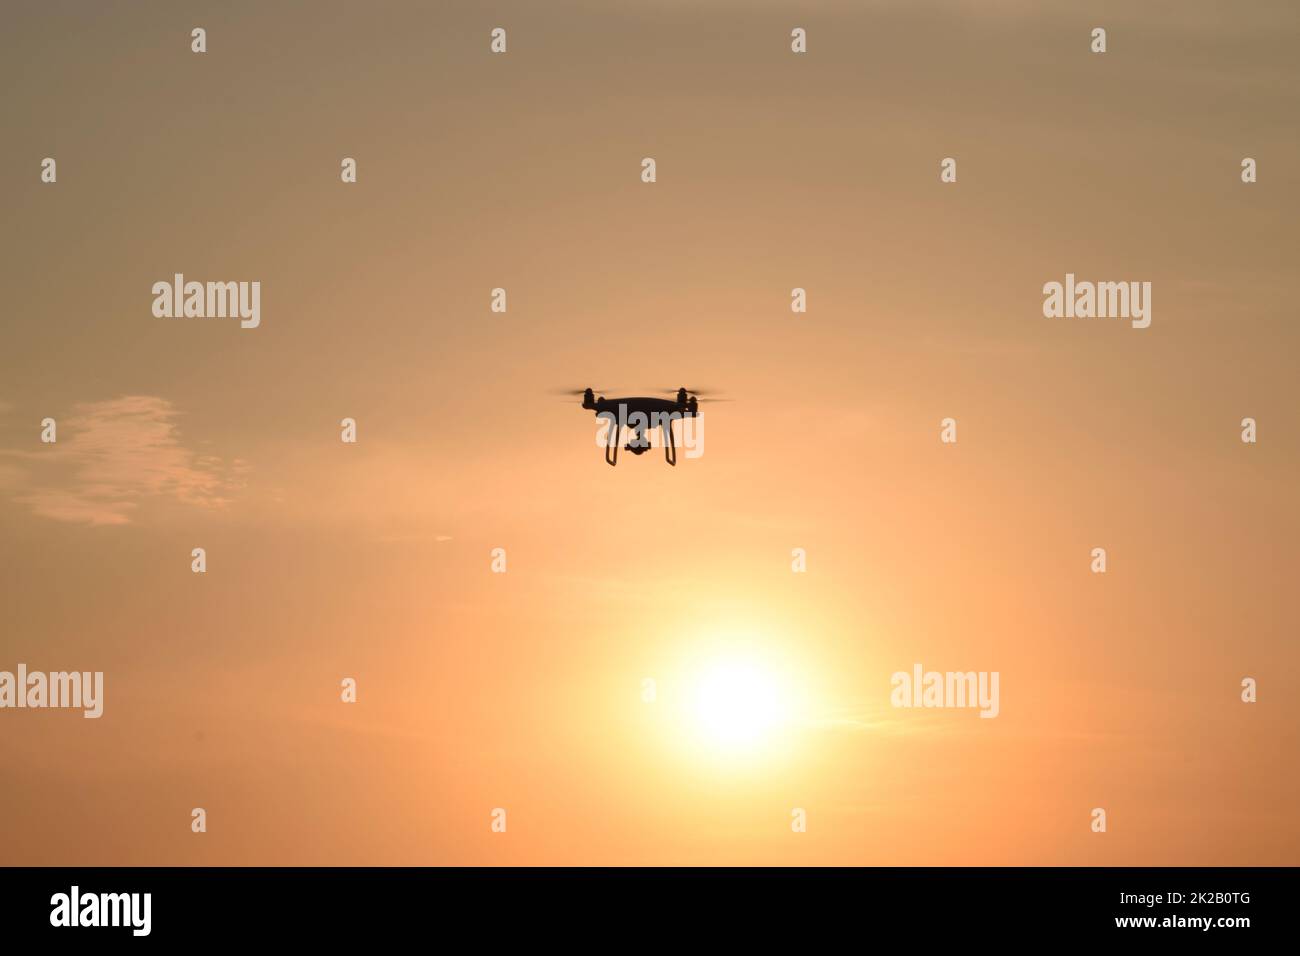 Die Silhouette der Drohne vor dem Hintergrund des Sonnenuntergangs Stockfoto